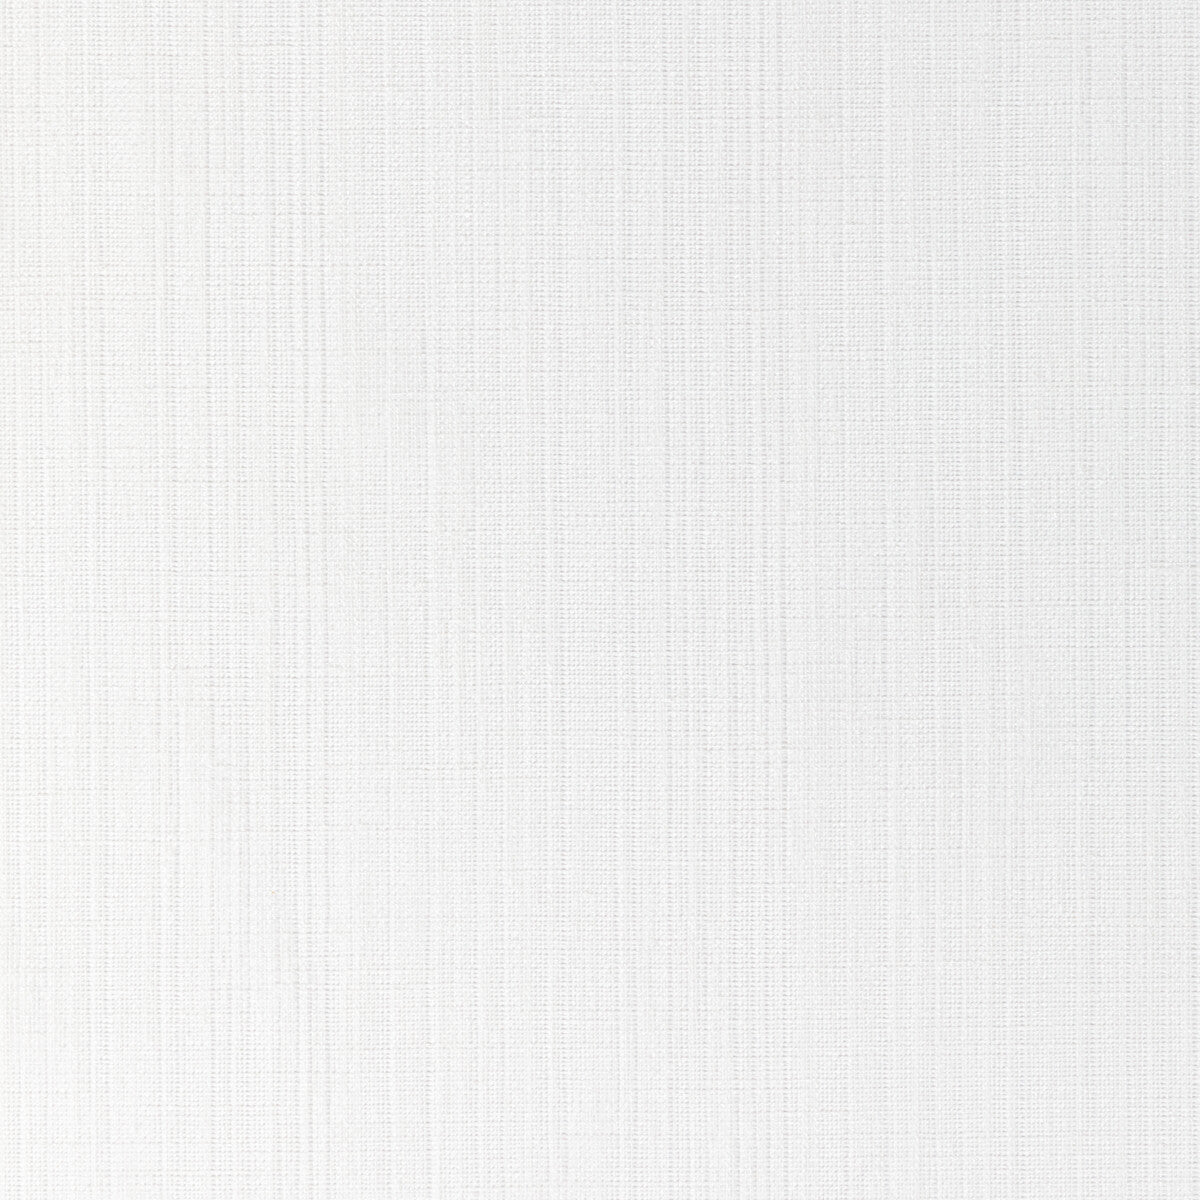 Kravet Basics fabric in 4878-101 color - pattern 4878.101.0 - by Kravet Basics